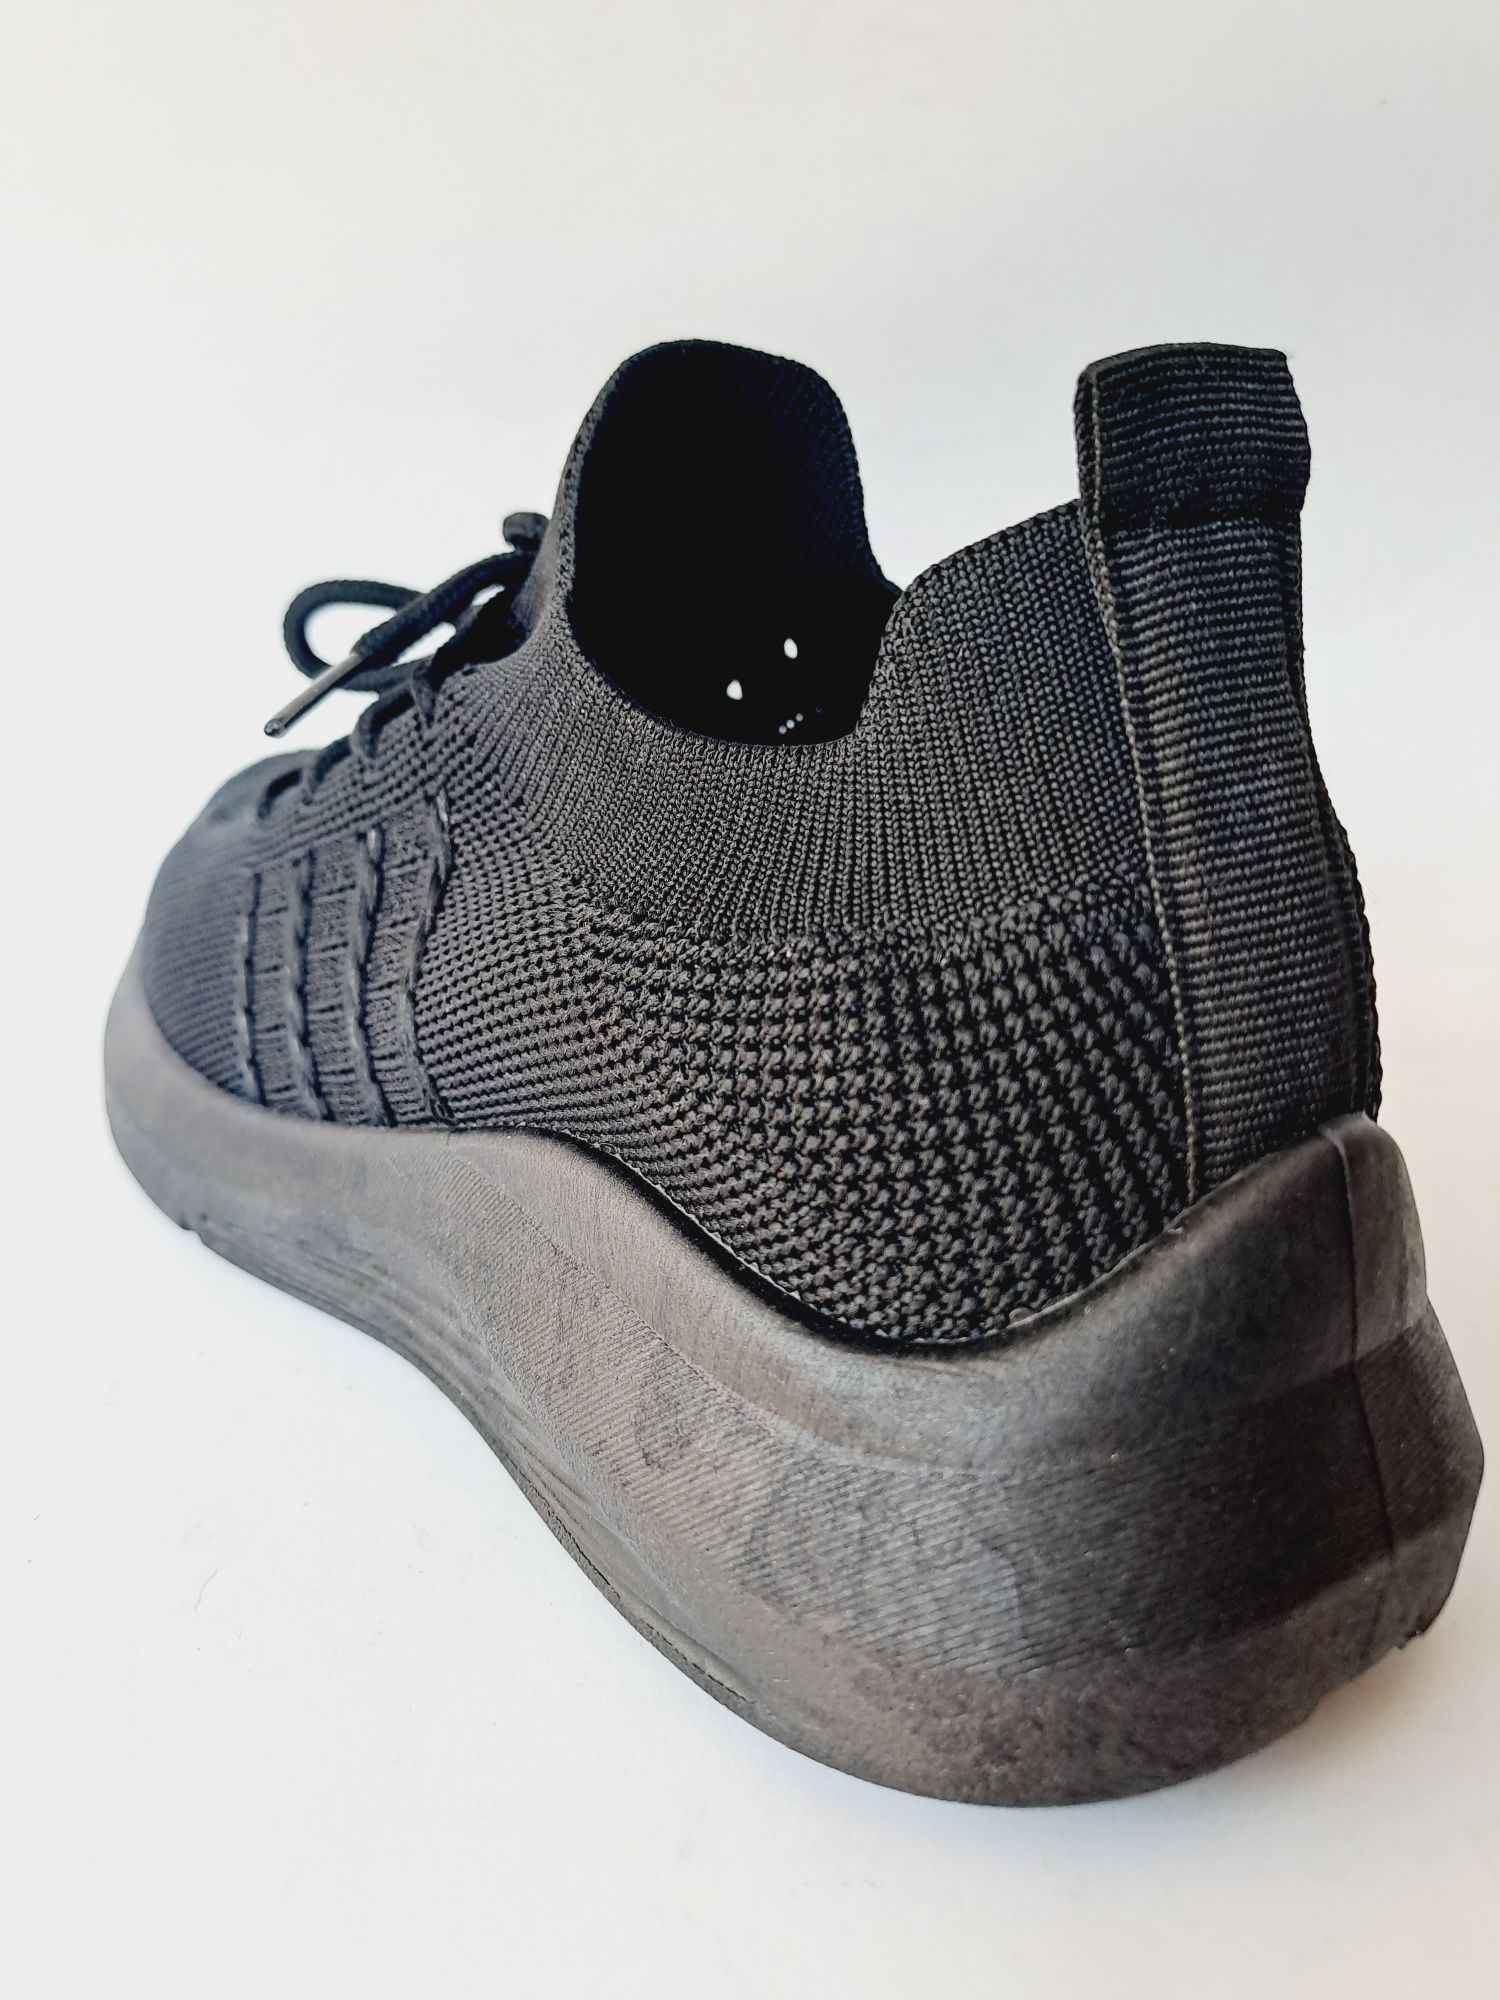 Buty, obuwie sportowe, materiałowe, wsuwane slip on, czarne rozmiar 38